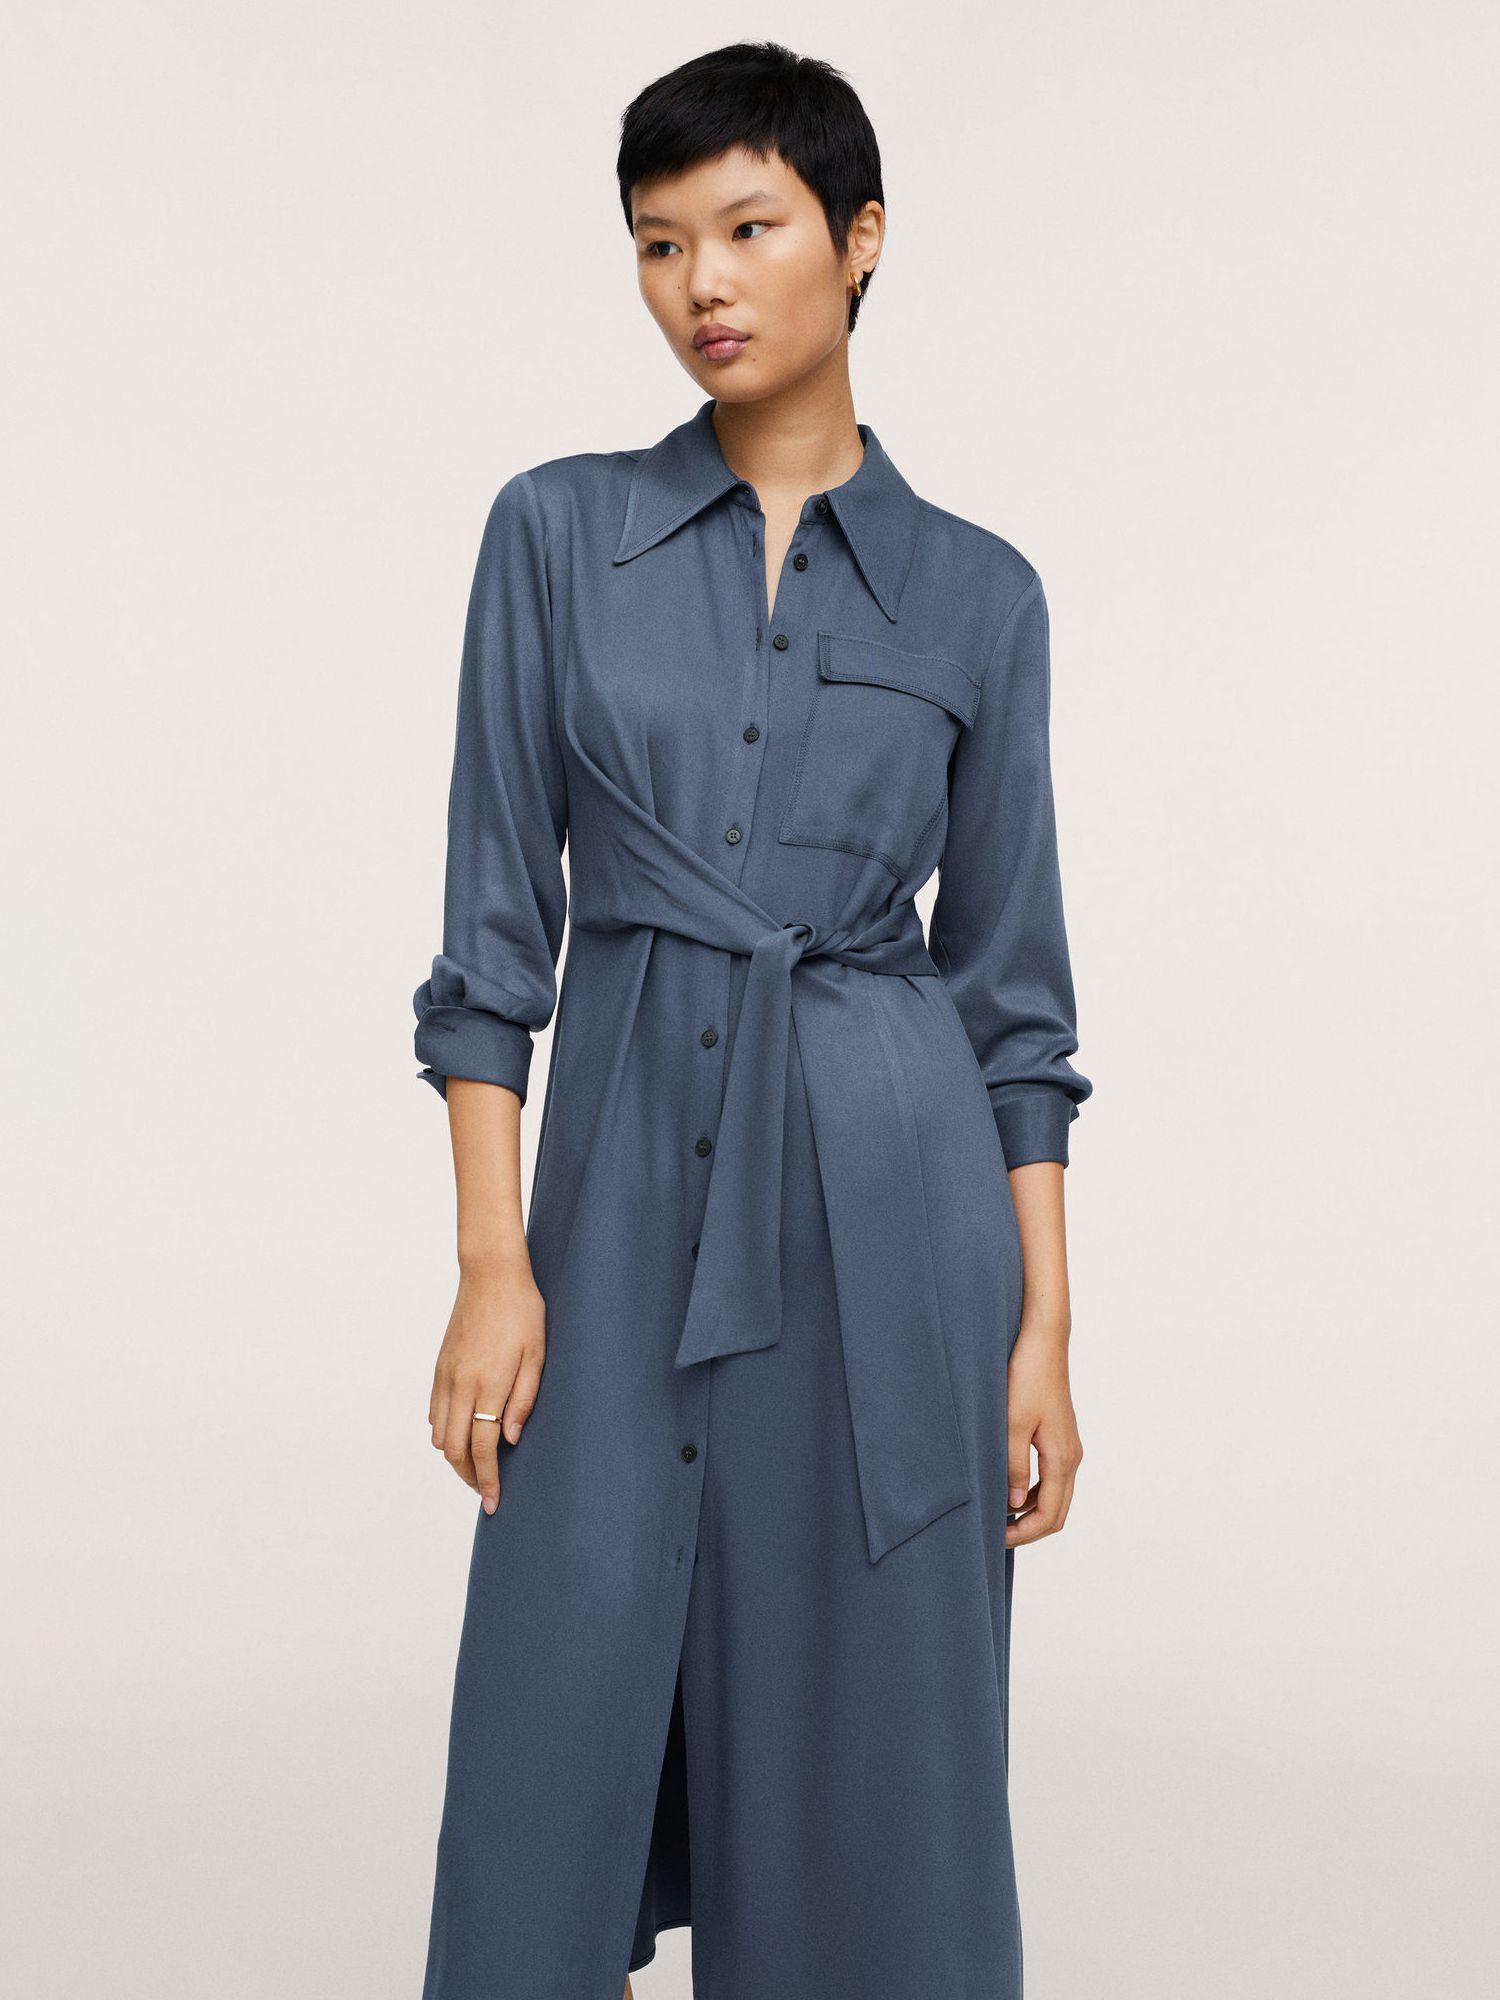 Mango Dublin Midi Shirt Dress, Medium Blue at John Lewis & Partners